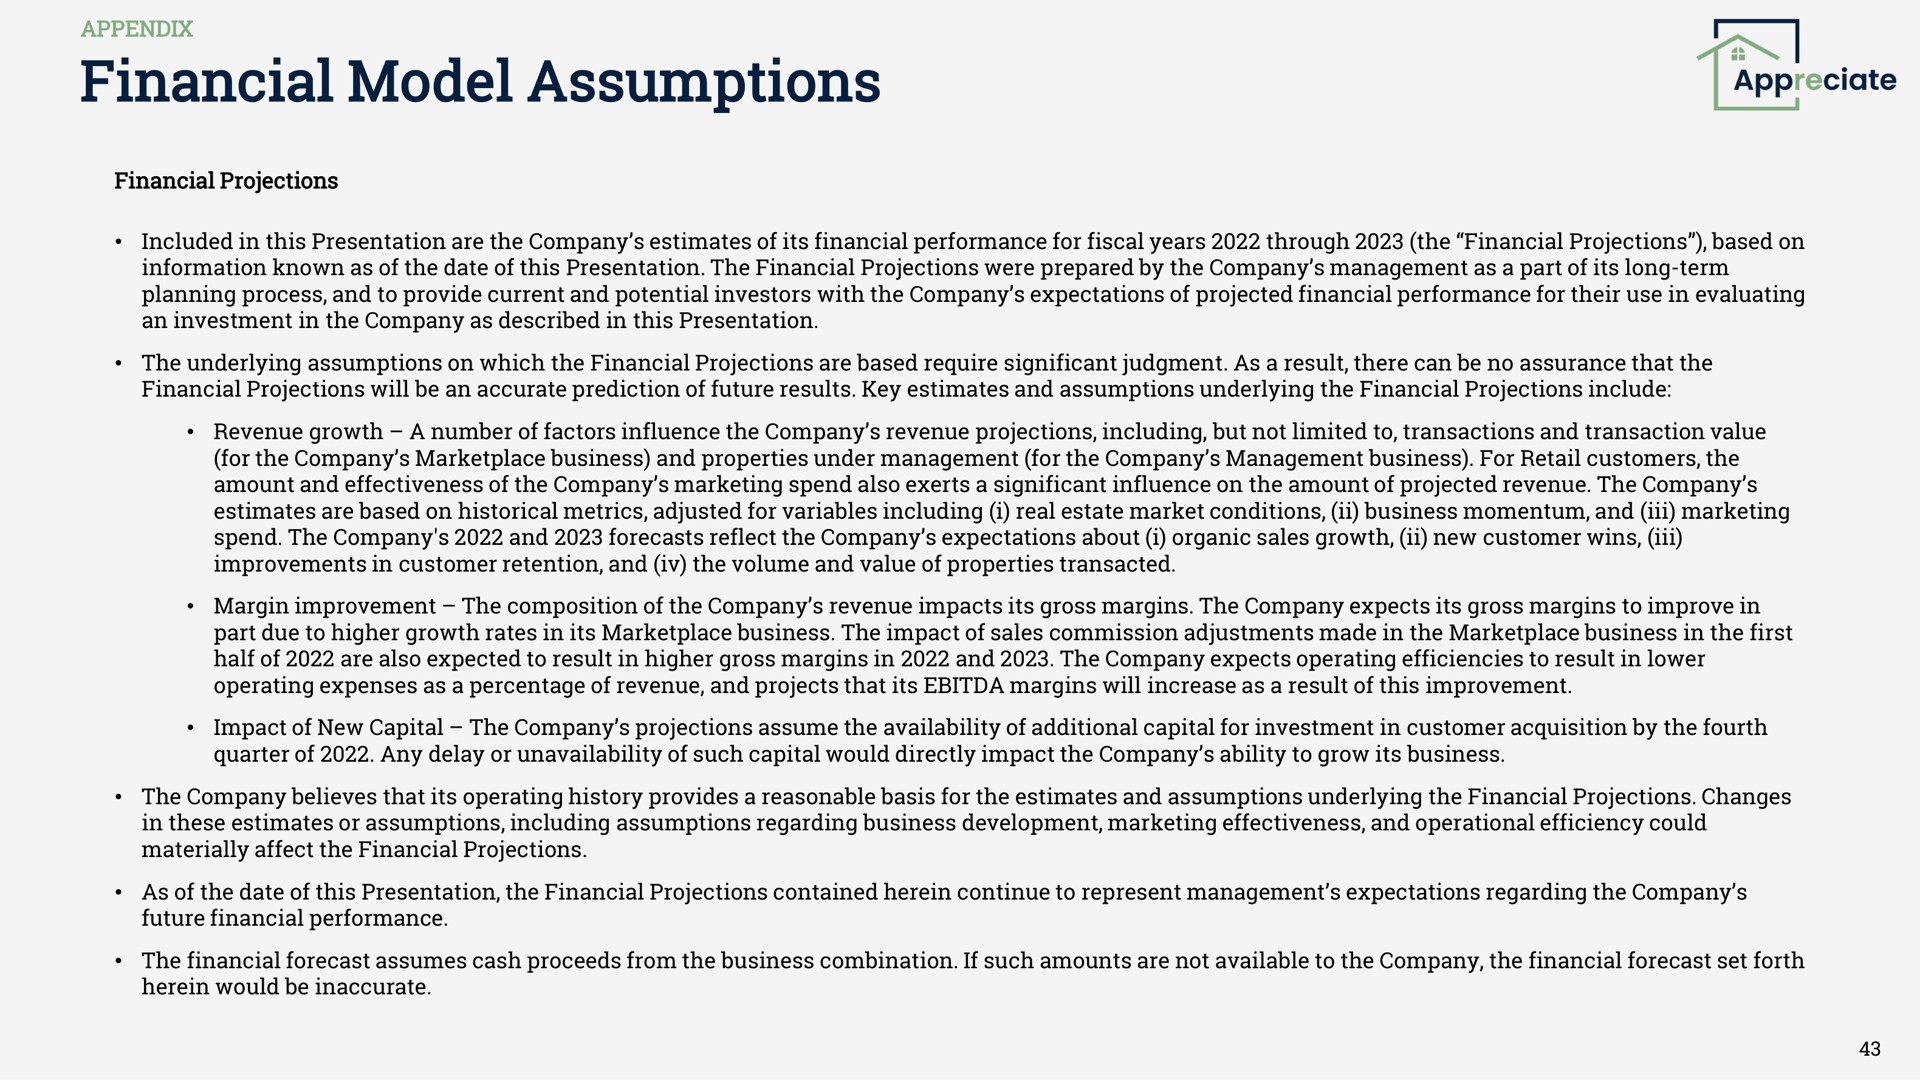 financial model assumptions appreciate | Appreciate